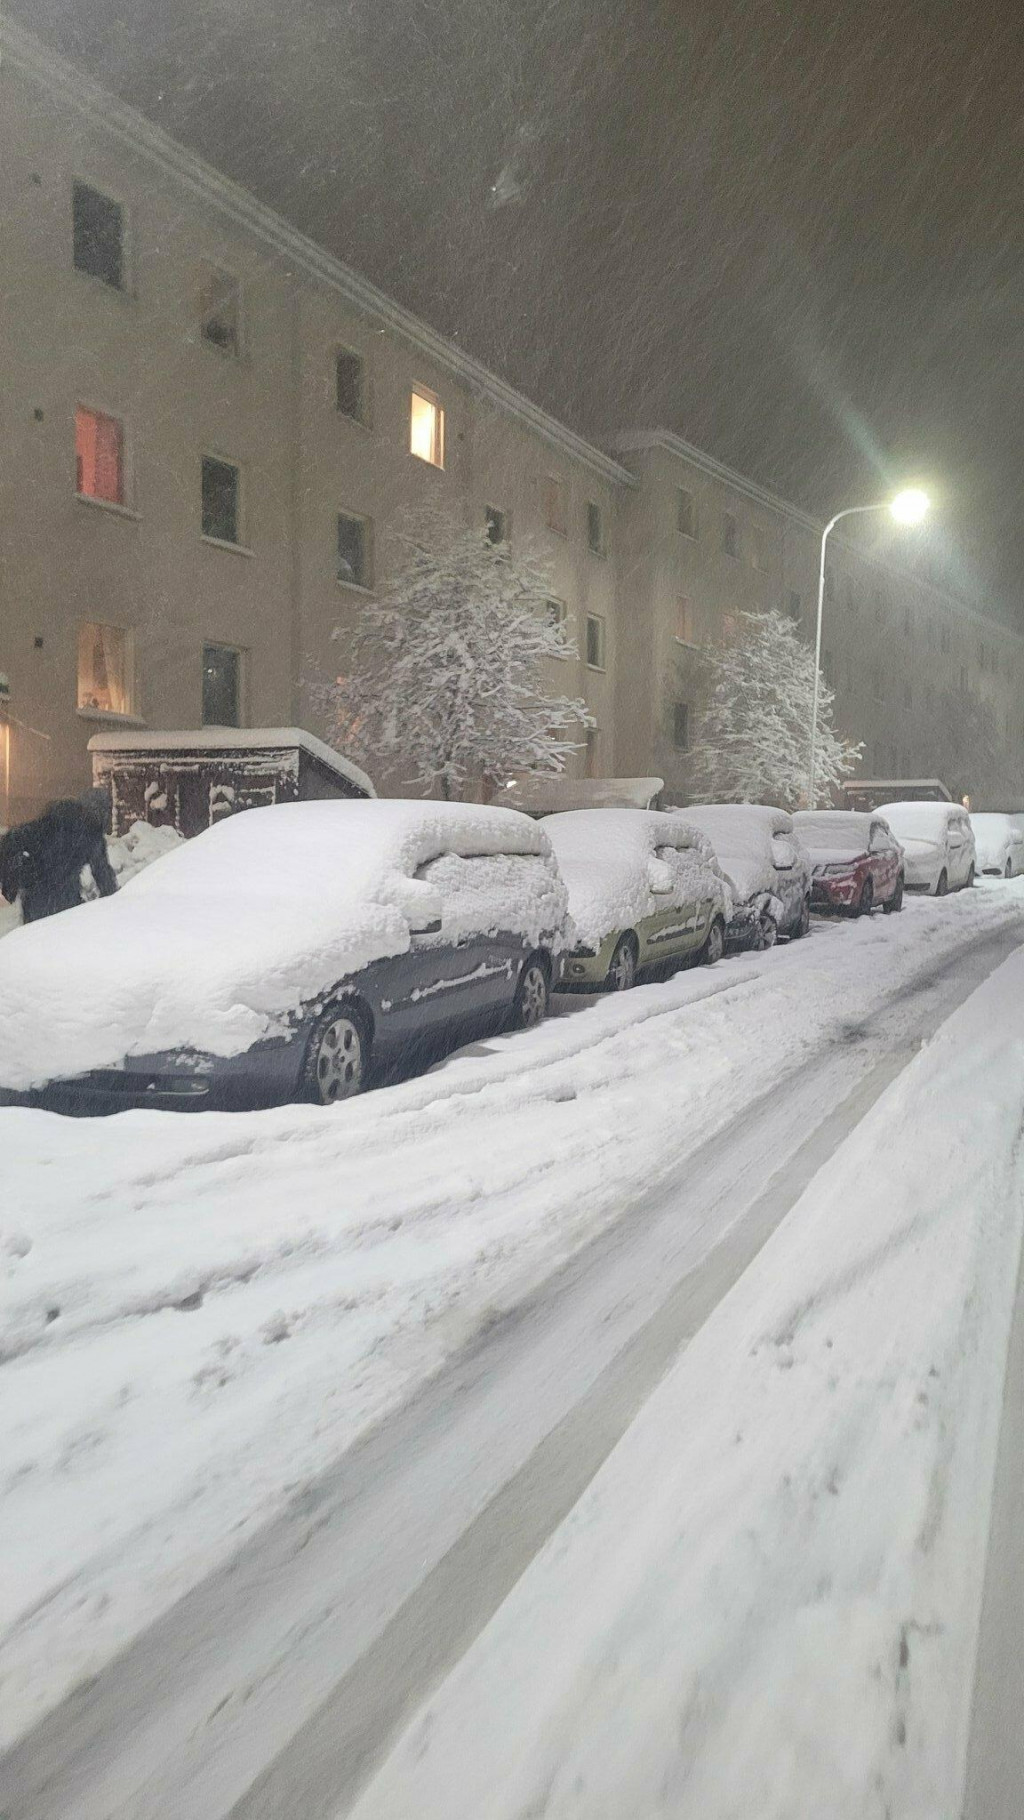 &lt;p&gt;Švedska paralizirana prvim obilnim snijegom ove godine&lt;/p&gt;
